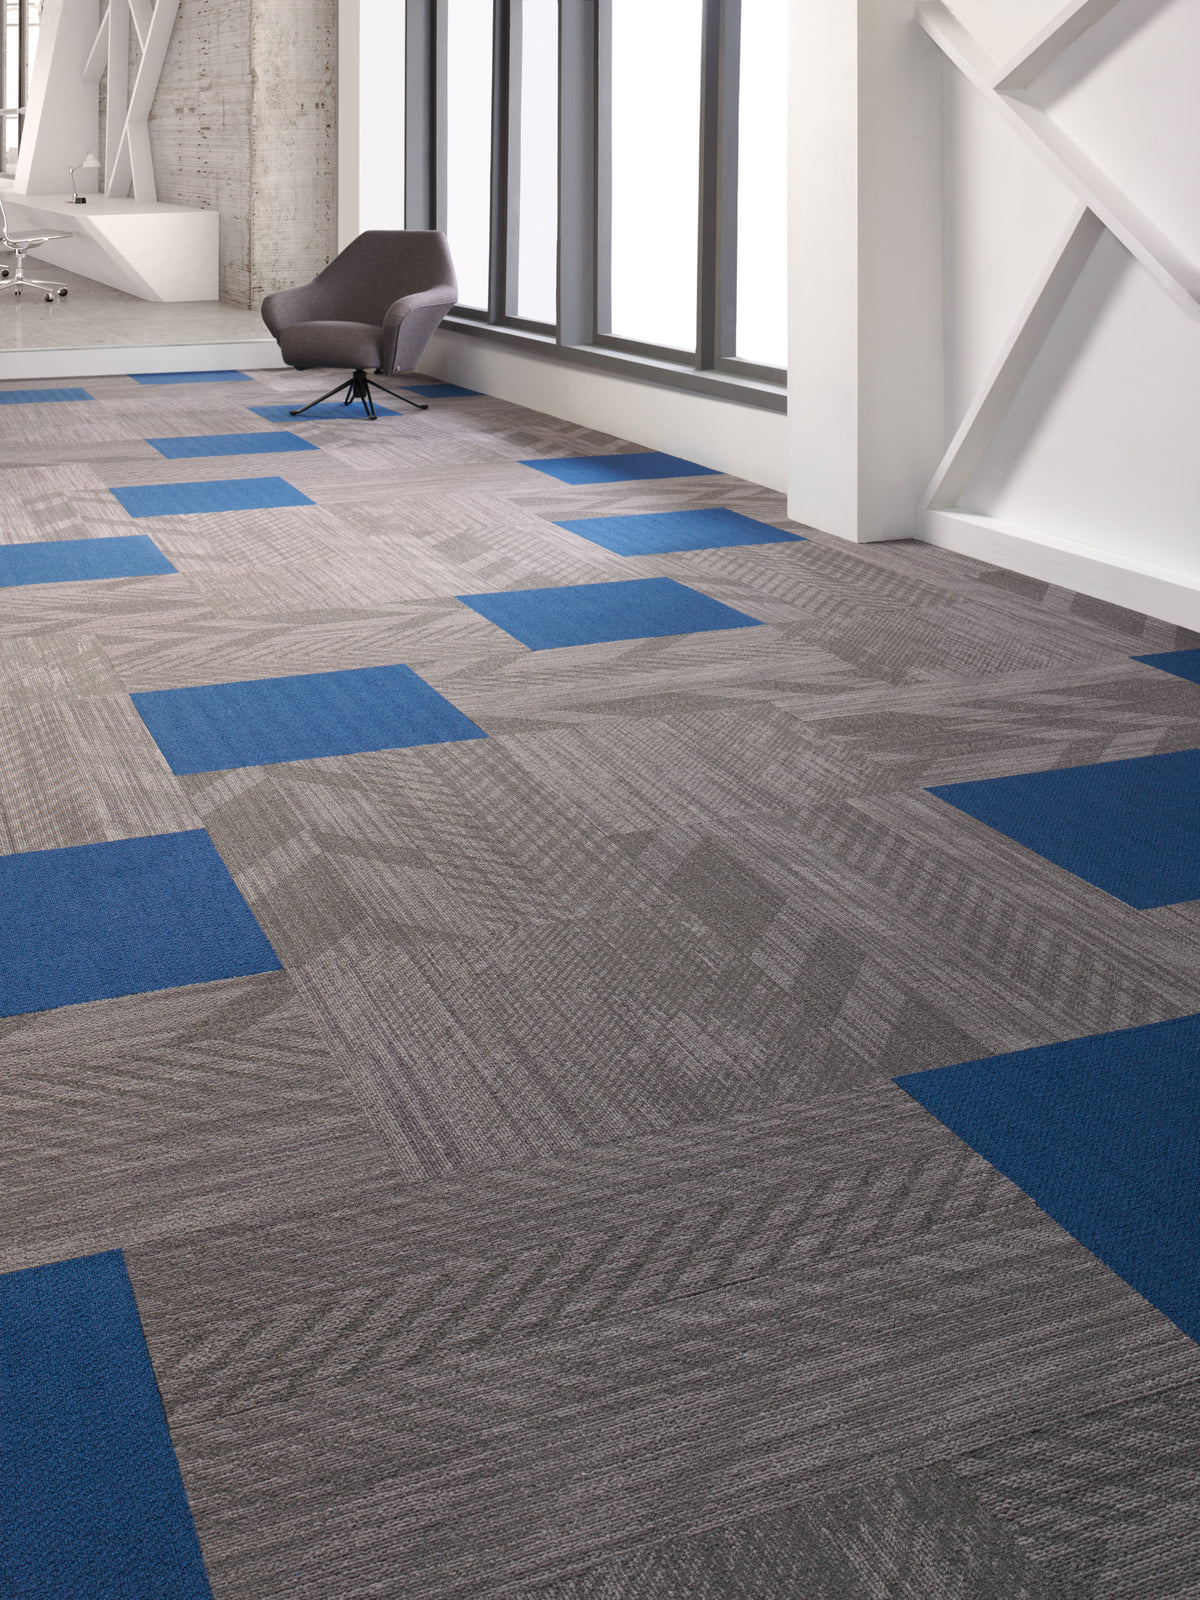 Mohawk Group - Colorbeat - Commercial Carpet Tile - Tango